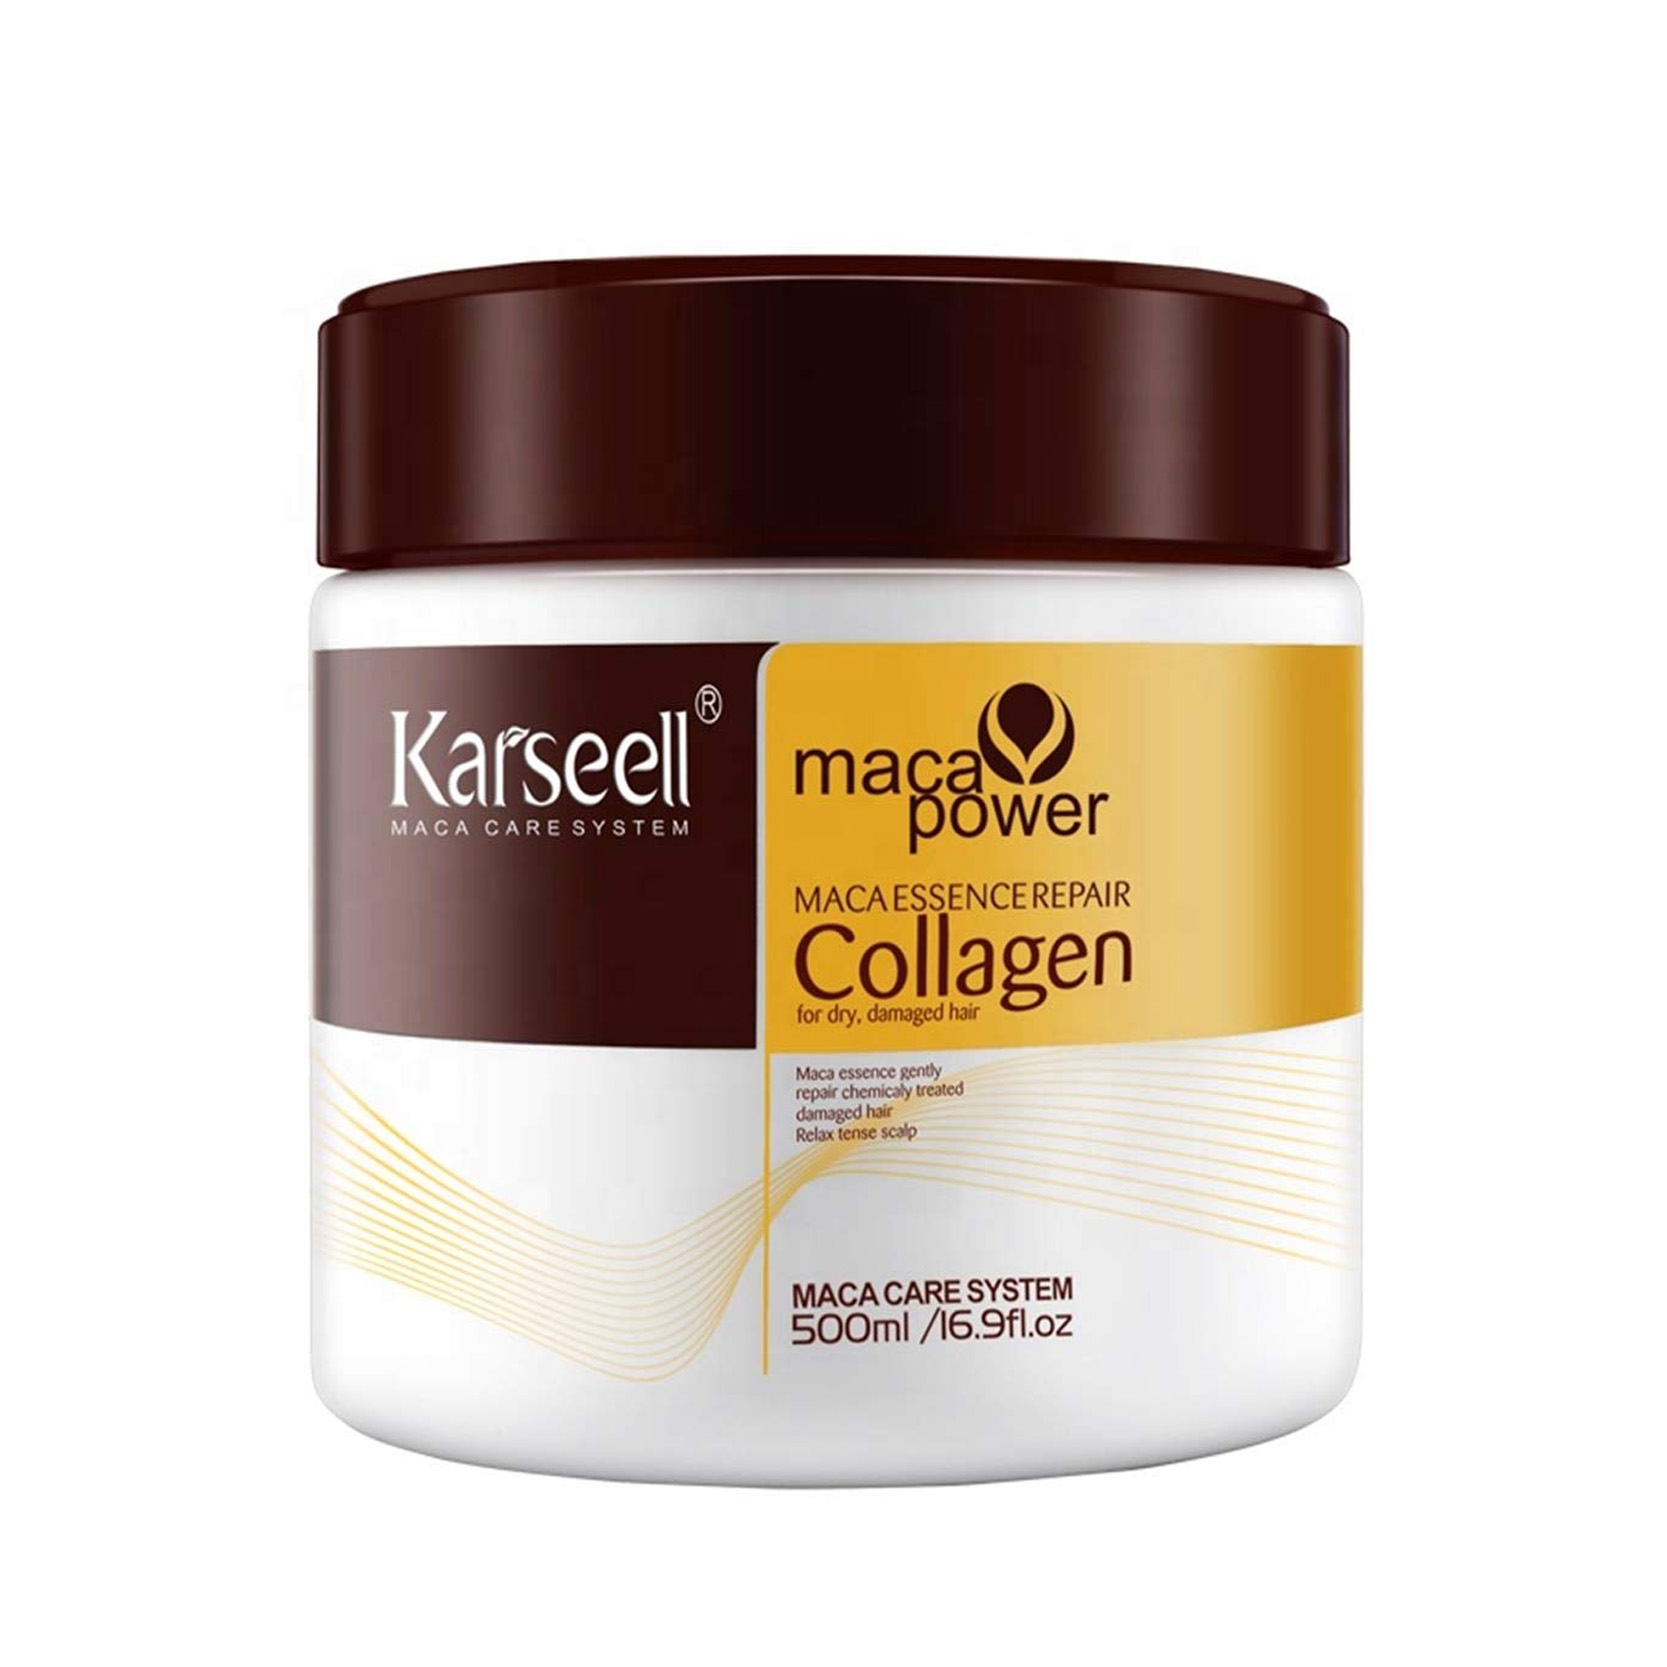 Салонные маски для волос. Collagen maca Power для волос Karseell. Maca Power Collagen для волос маска. Karseell Collagen маска для волос. Maca Power Collagen Karseell маска.